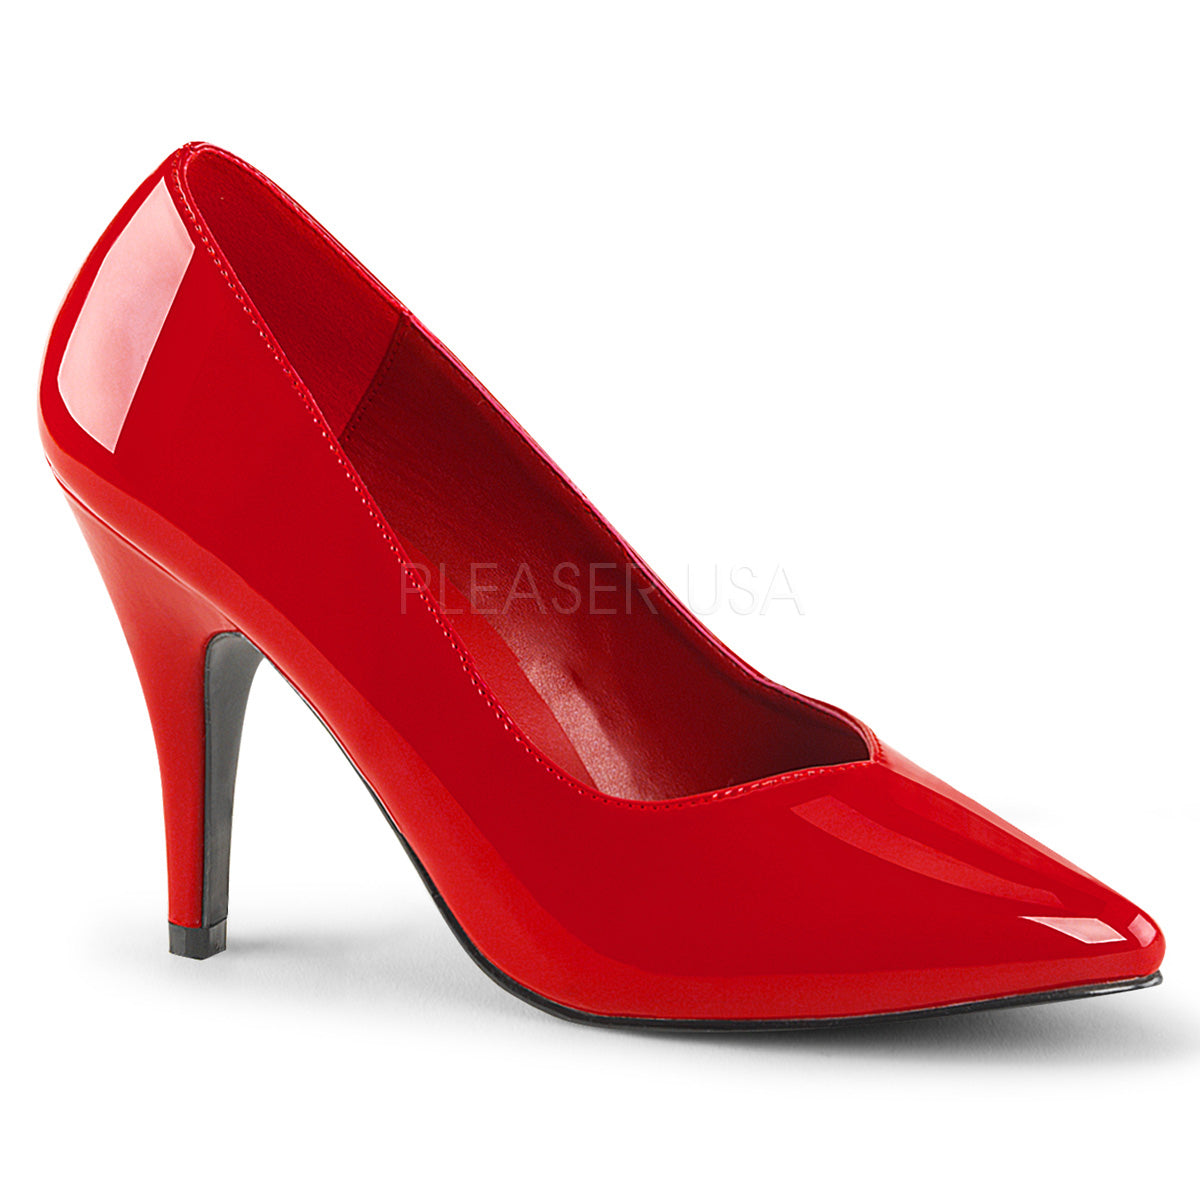 4" Heel DREAM-420 Red